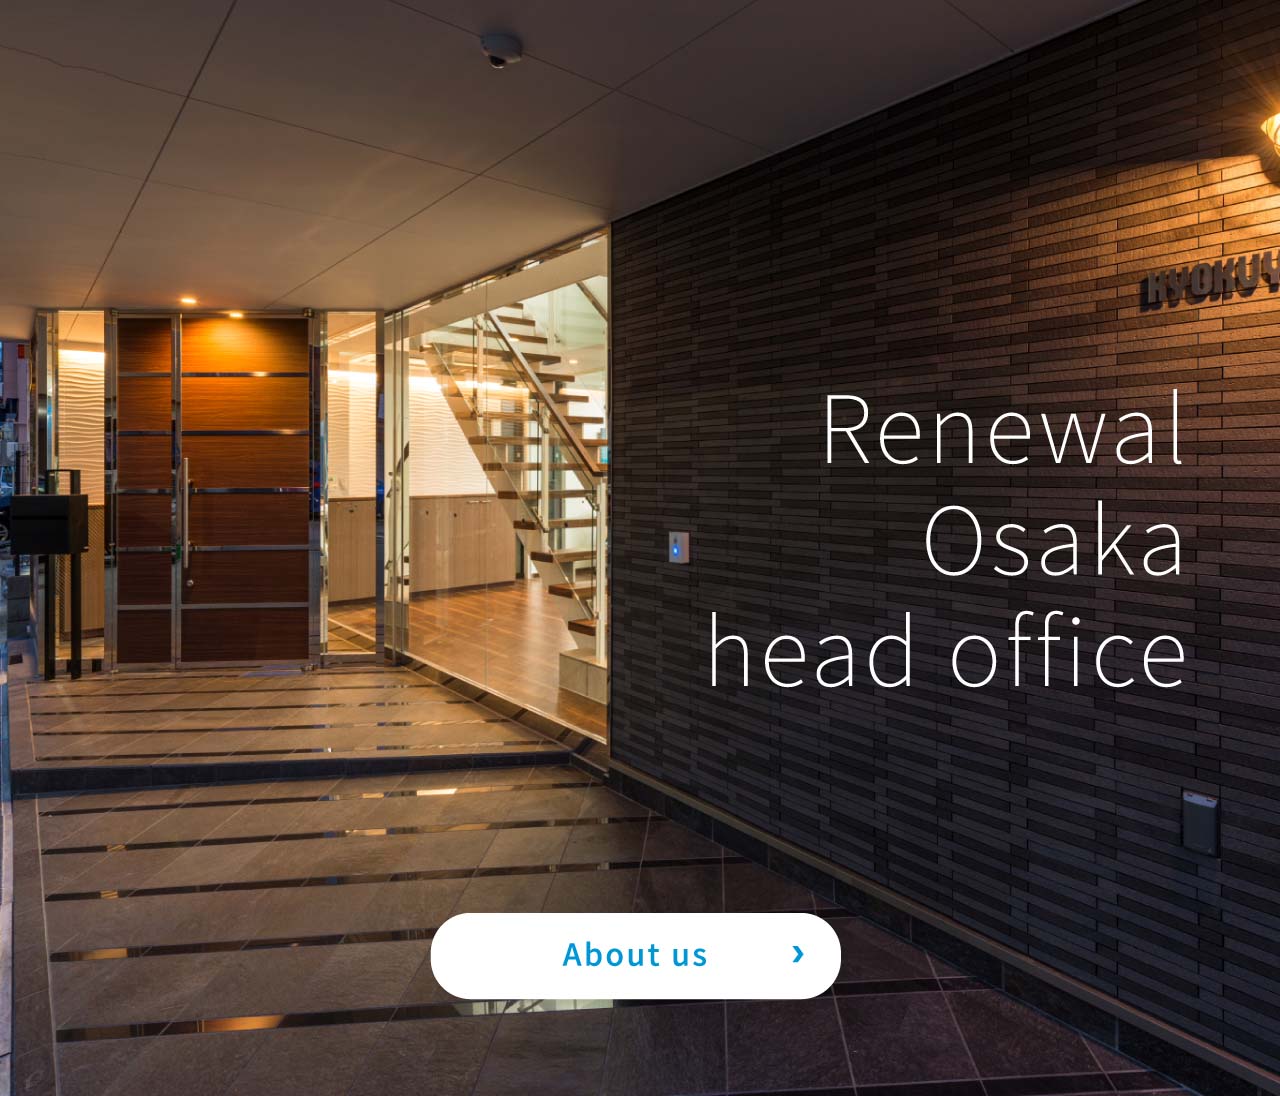 Renewal Osaka head office
About us